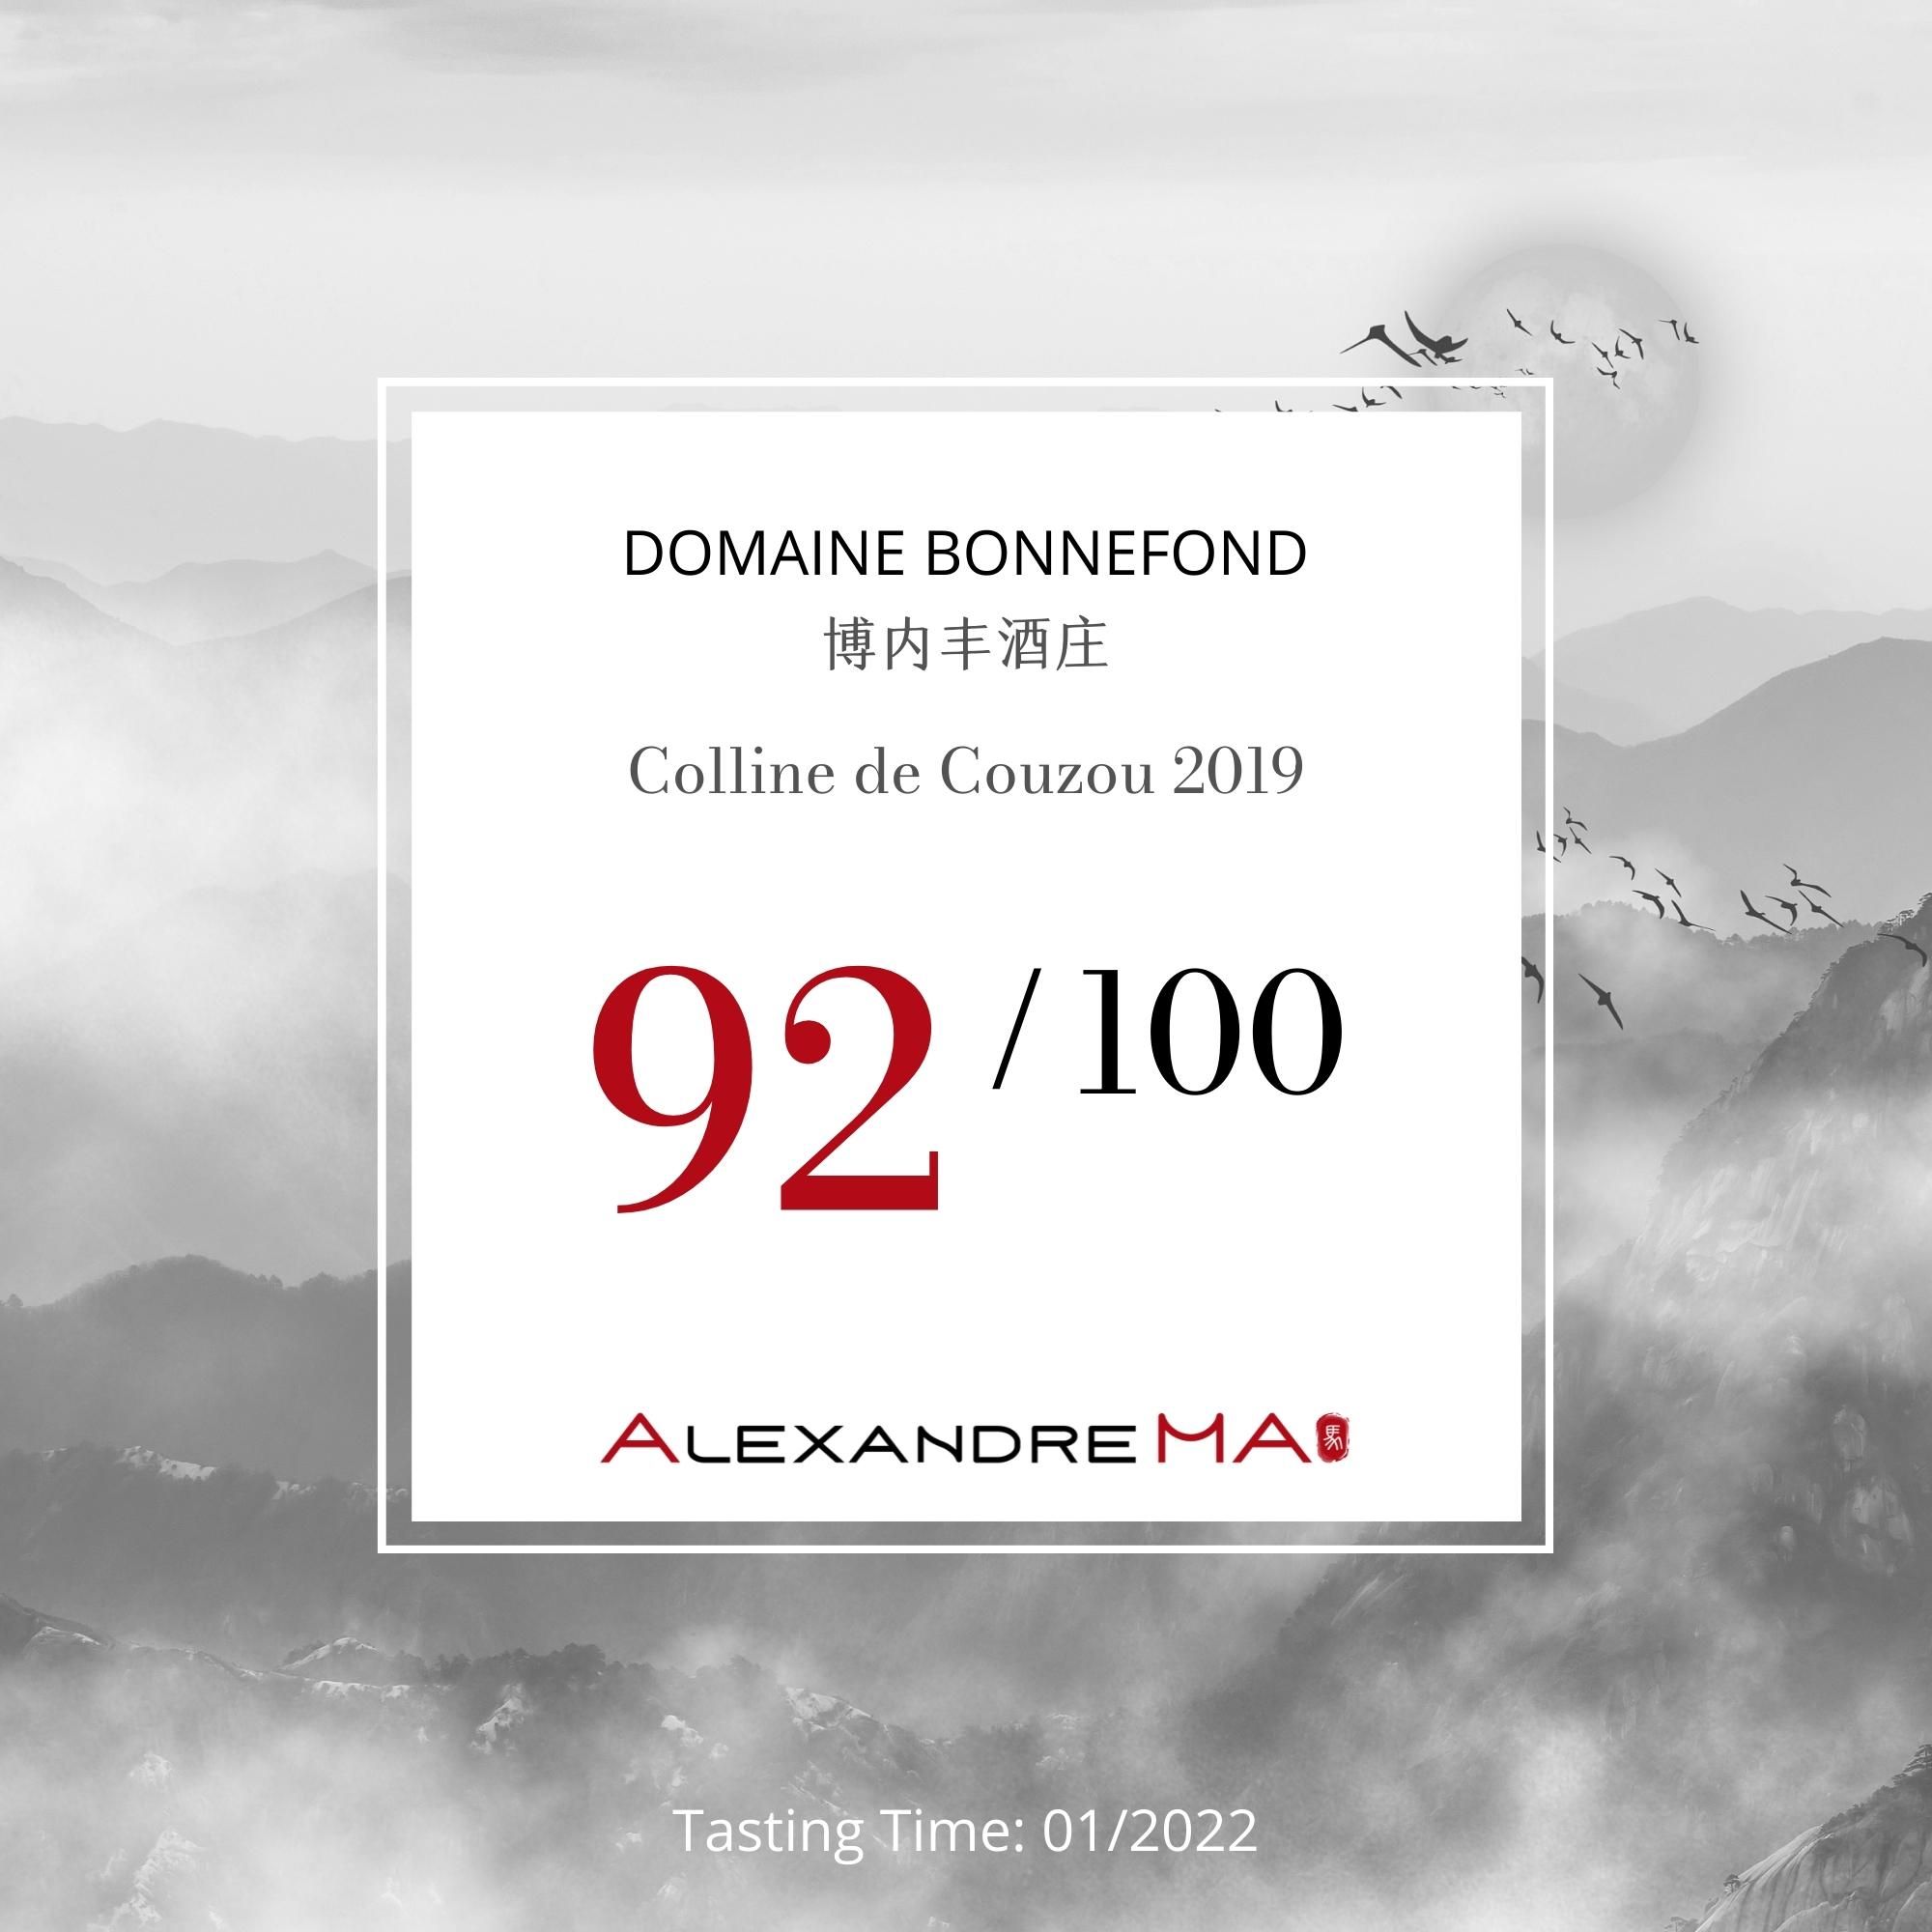 Domaine Bonnefond (Patrick et Christophe) 博内丰酒庄 – Colline de Couzou 2019 - Alexandre Ma